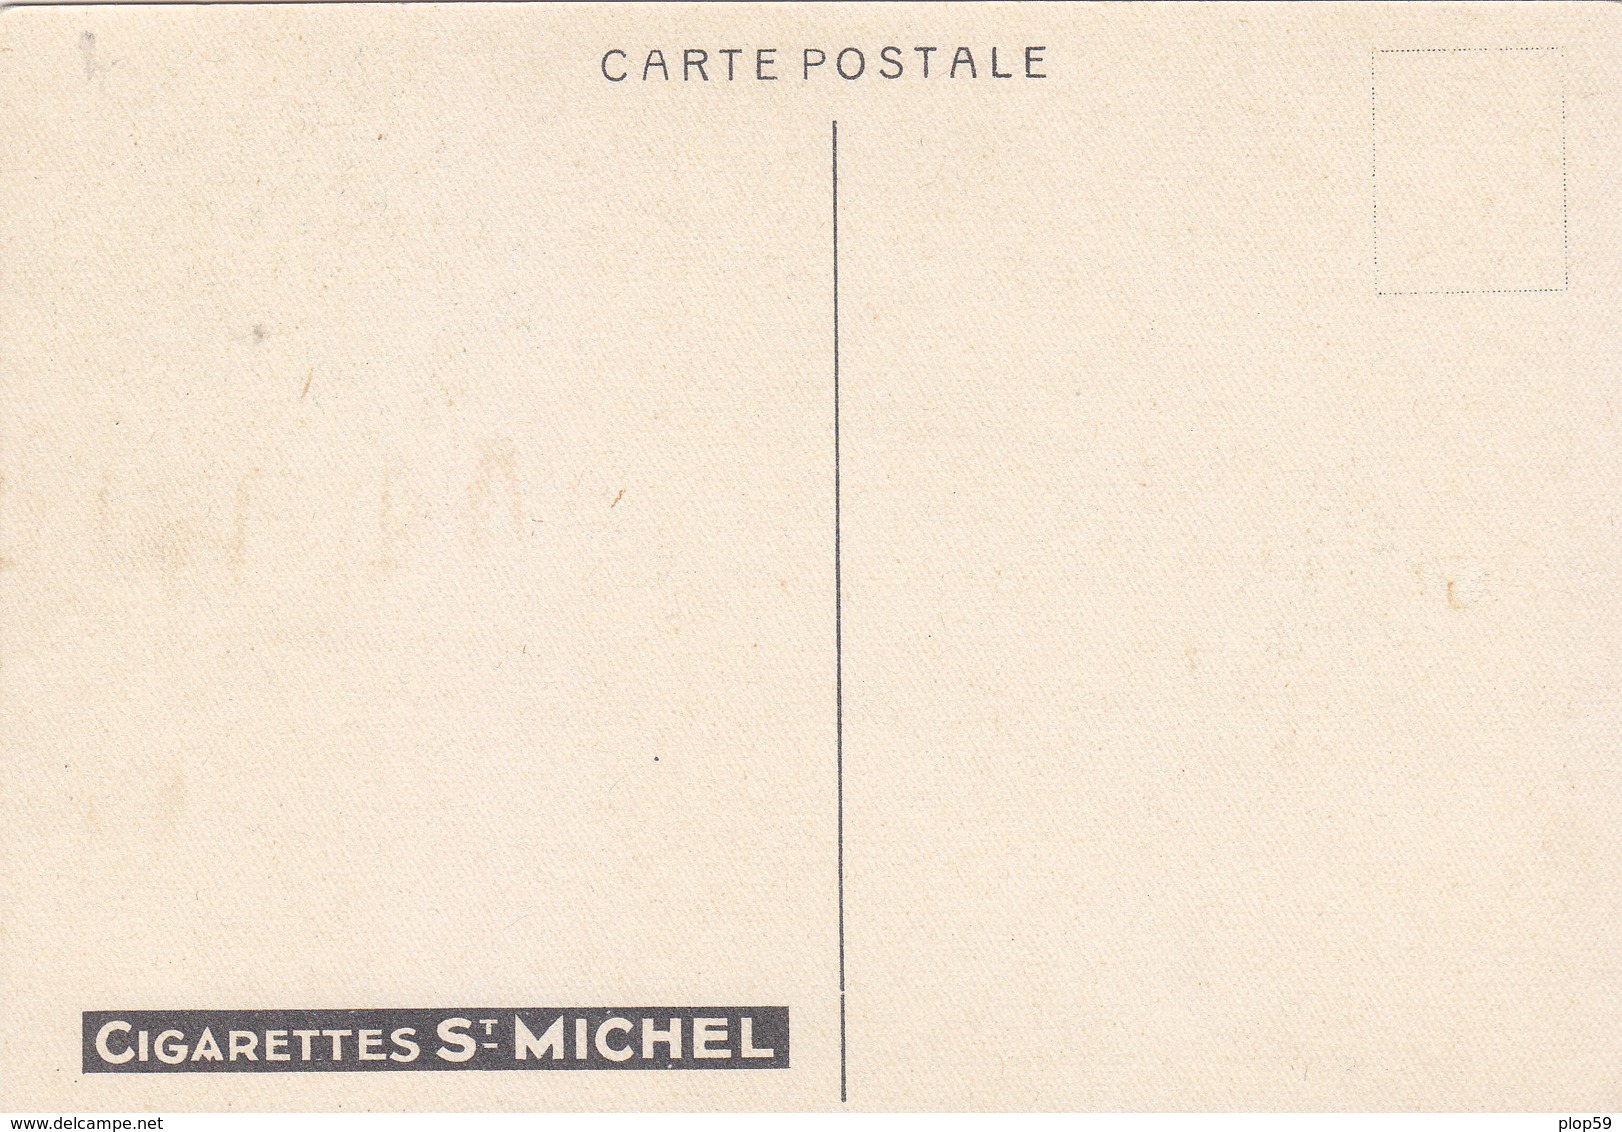 CARTE PUB PUBLICITE CIGARETTES SAINT ST MICHEL ADVERTISING CARD ILLUSTRATEUR GERMAINE HAGEMANS SINGE QUI FUME - Publicité